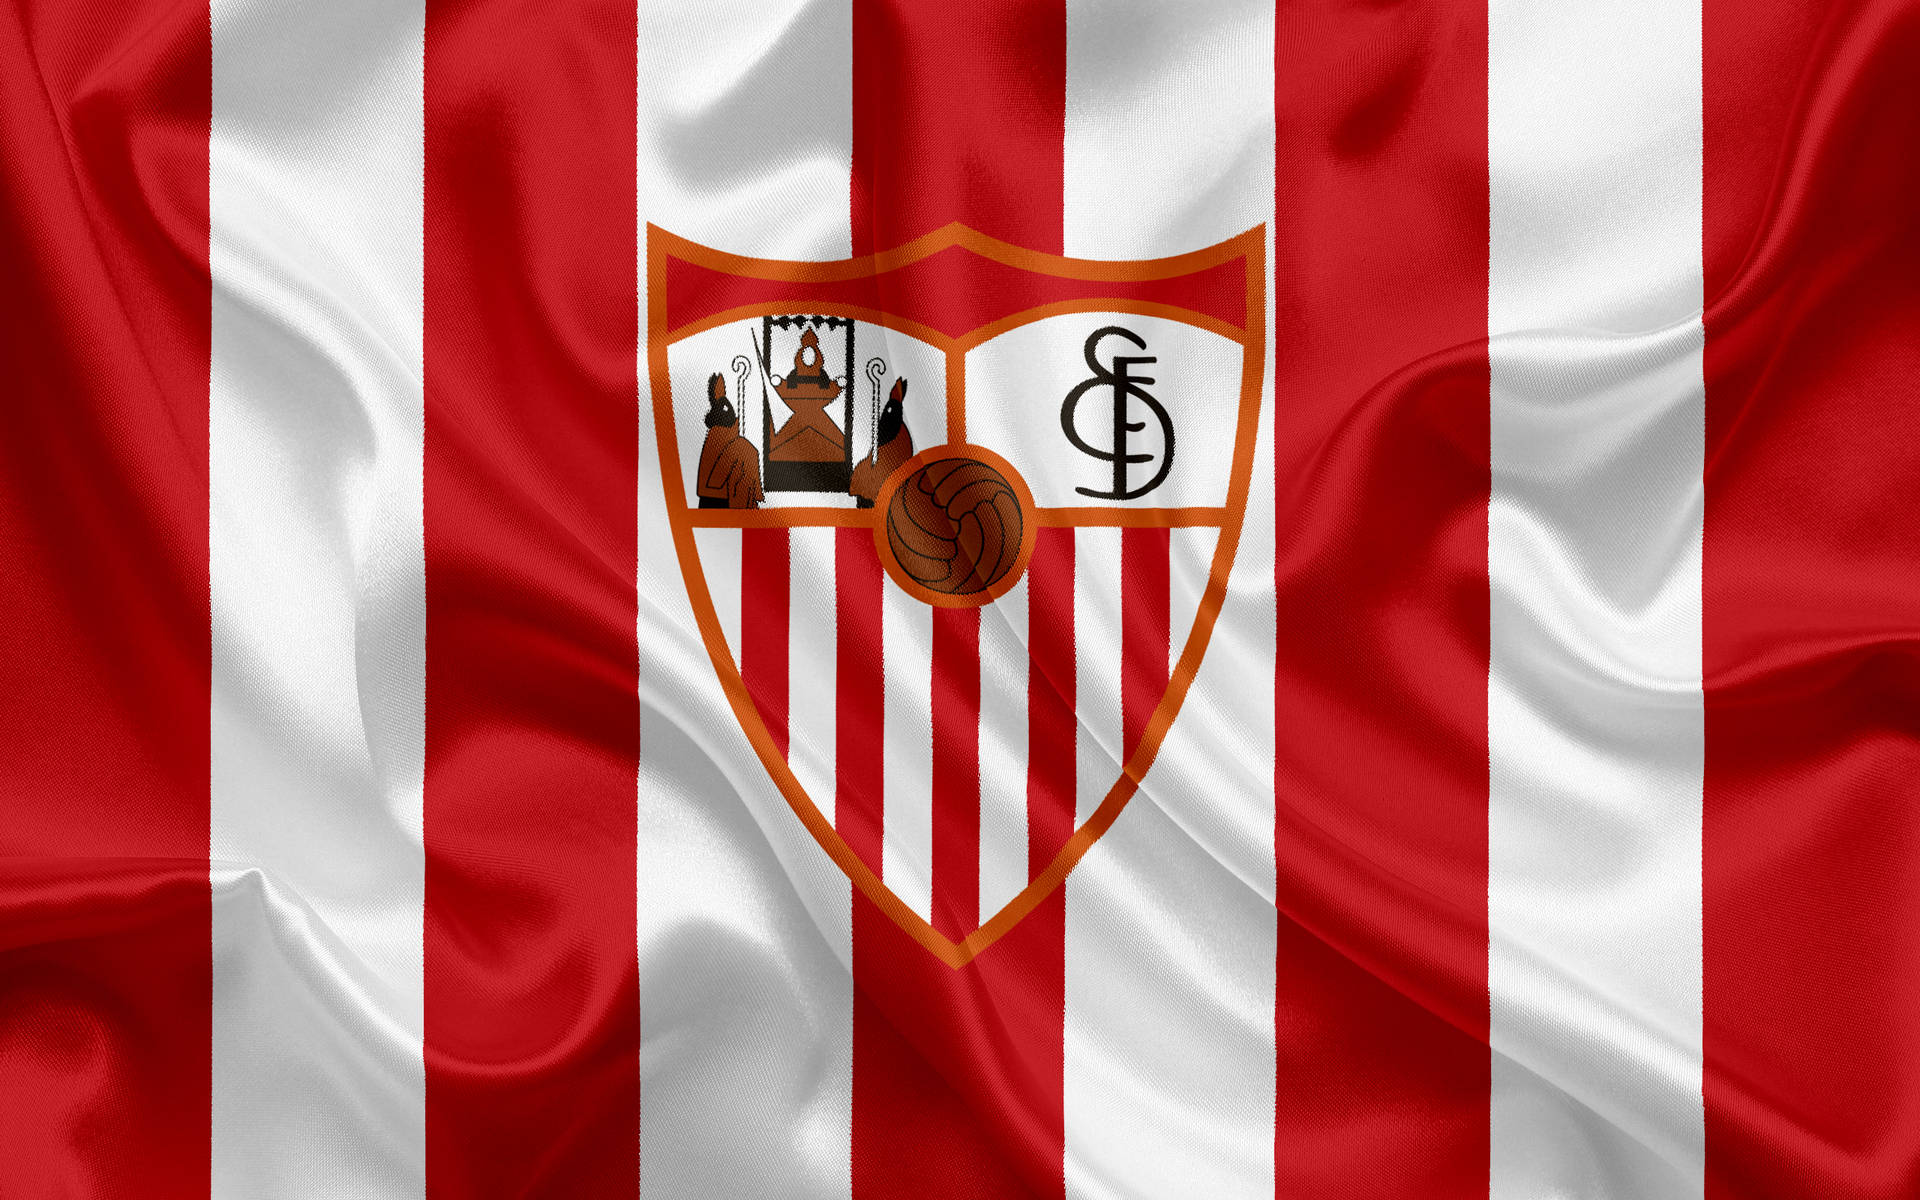 Banderadel Sevilla Fc En Rojo Y Blanco. Fondo de pantalla